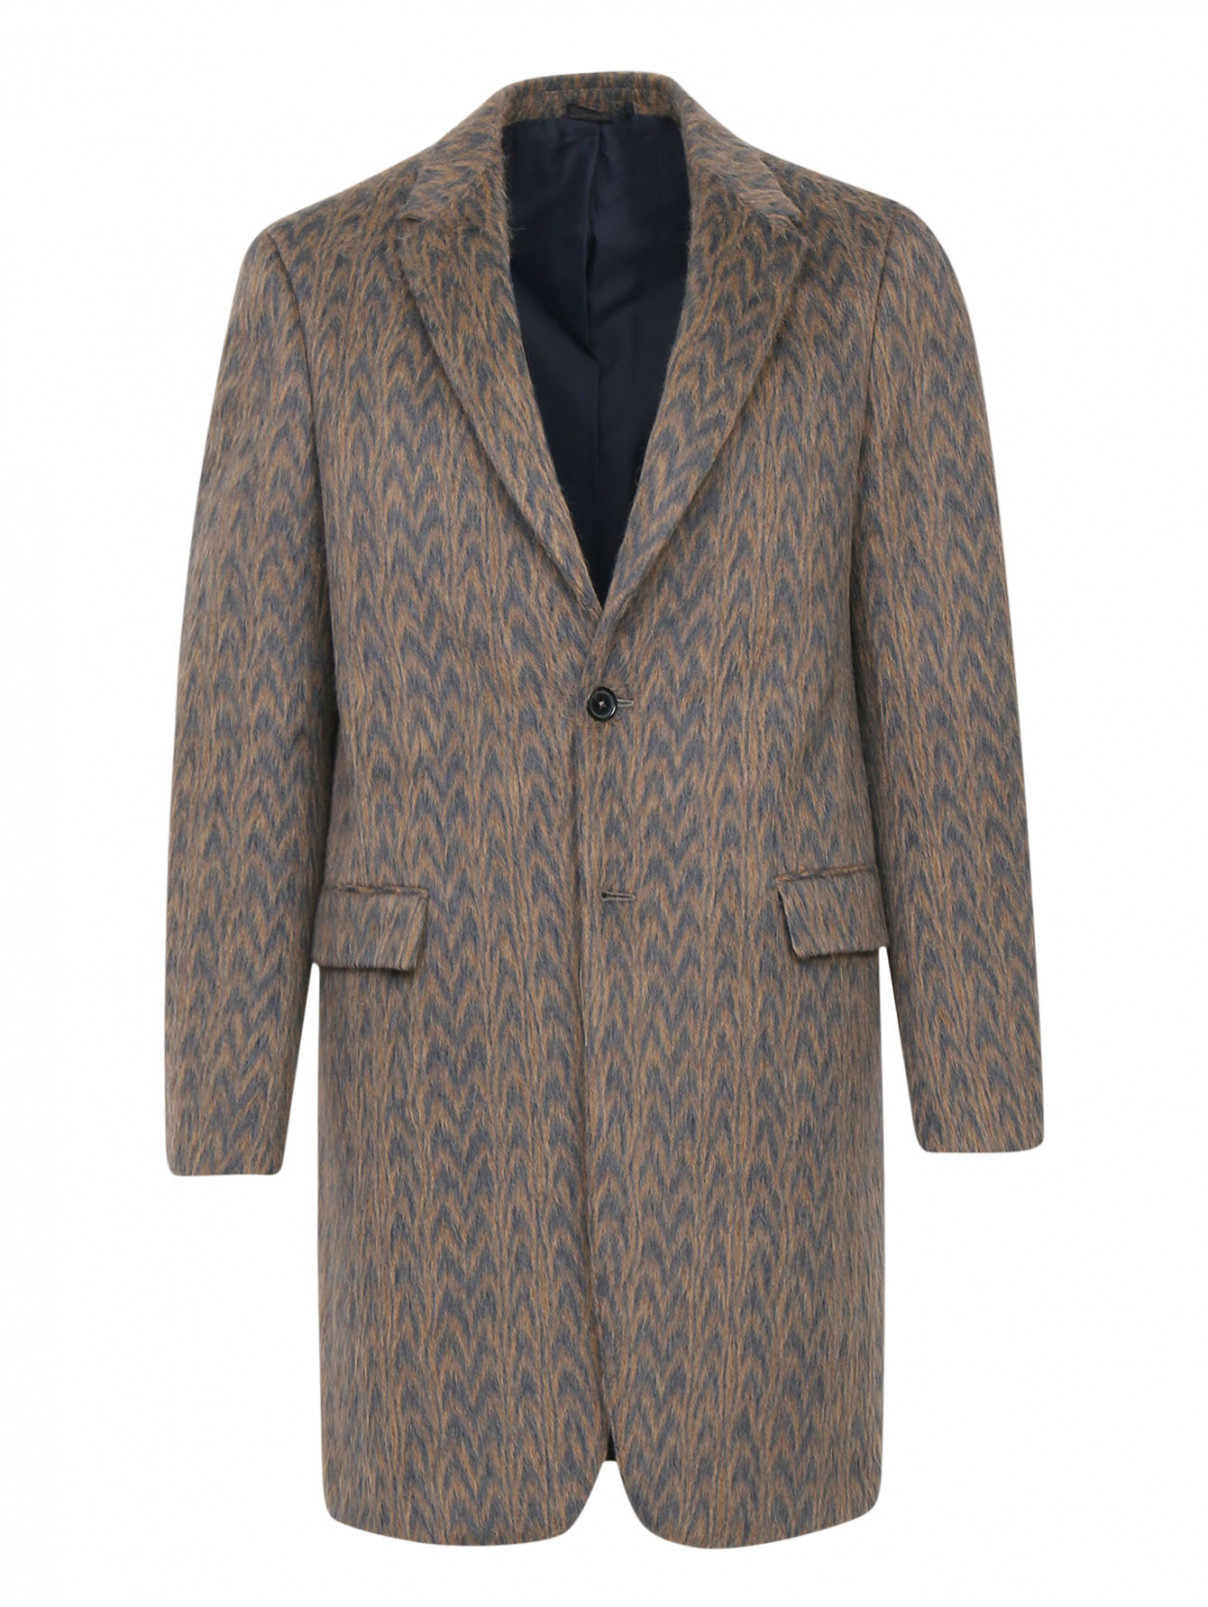 Пальто из шерсти с узором Jil Sander  –  Общий вид  – Цвет:  Бежевый